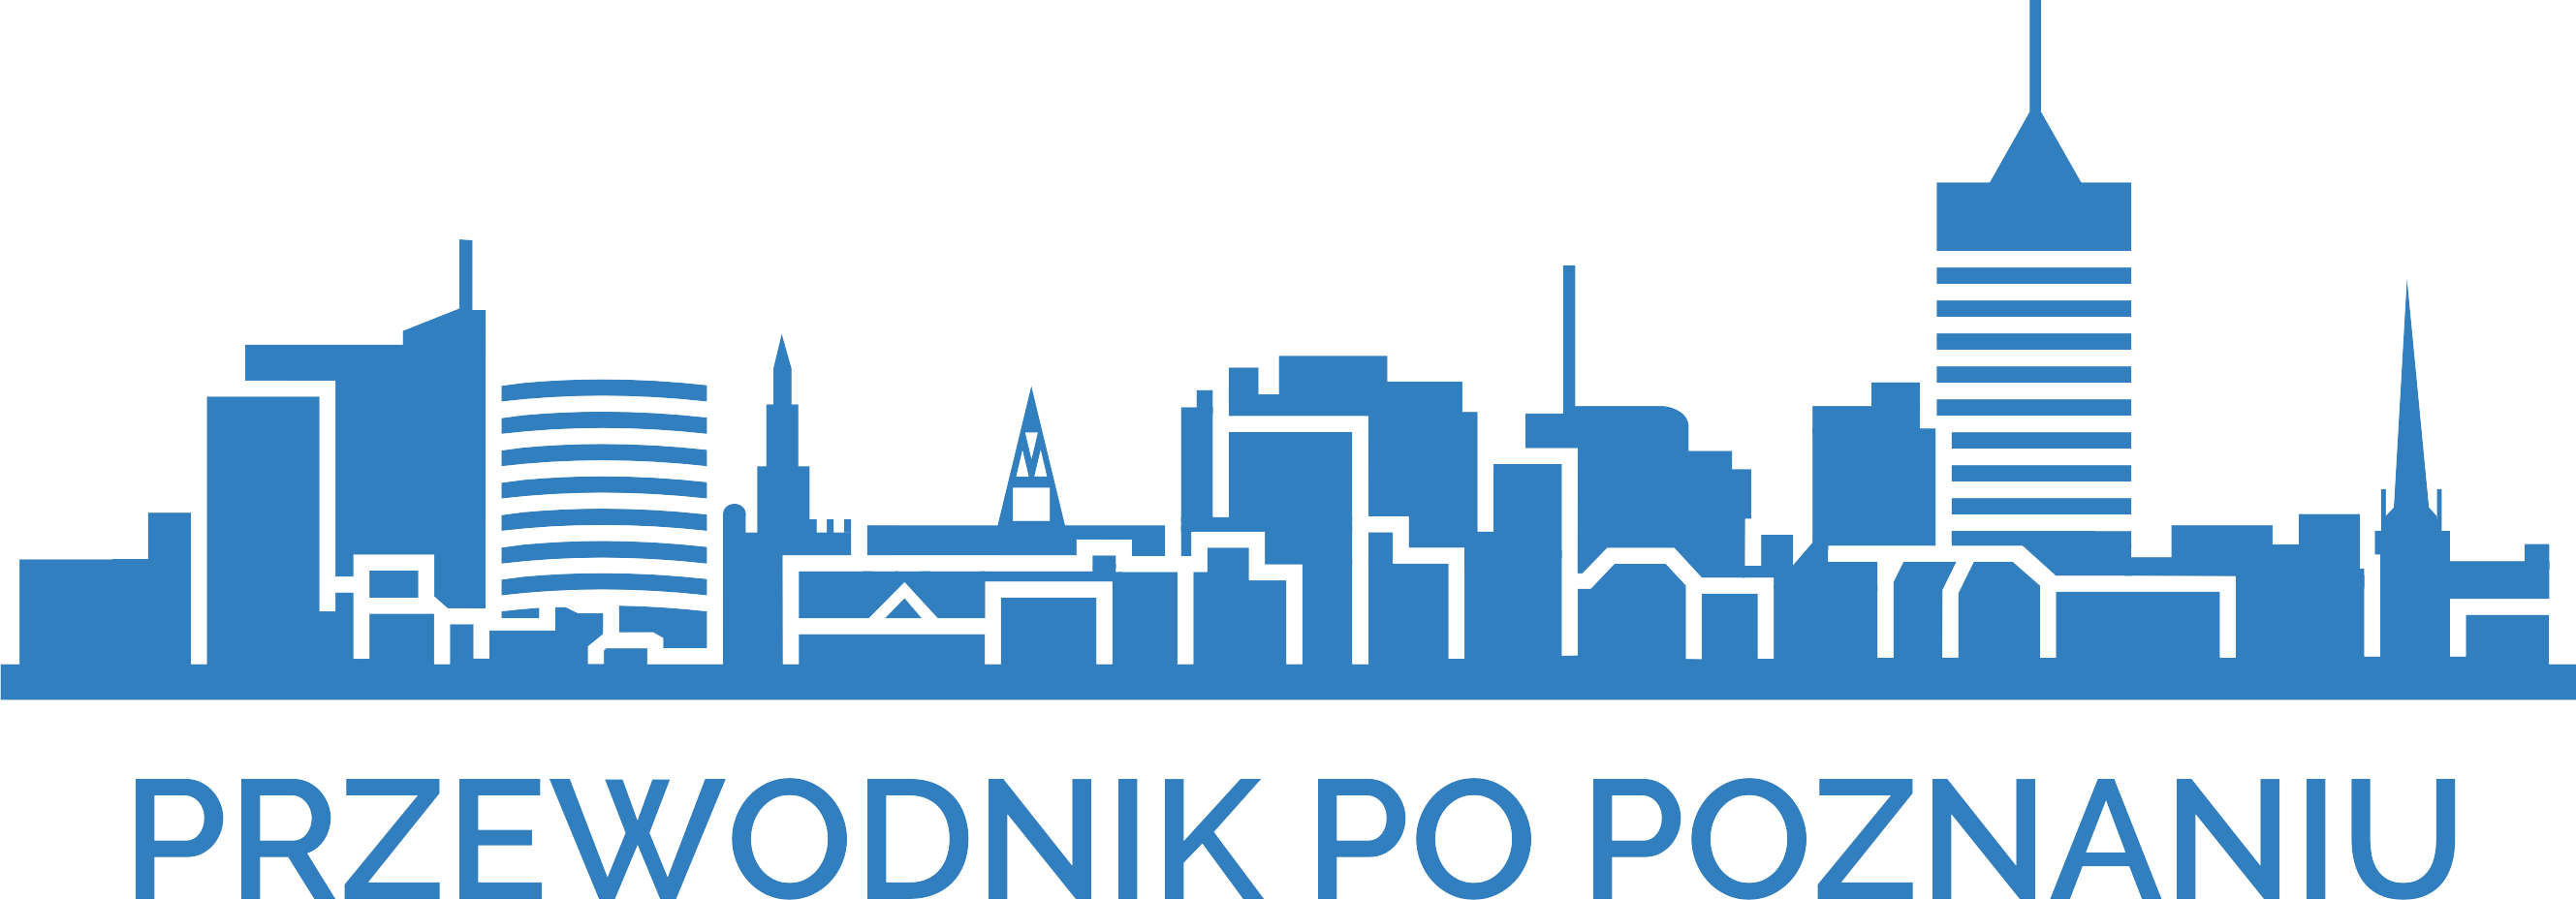 Przewodnik Poznań | Wycieczki po Poznaniu